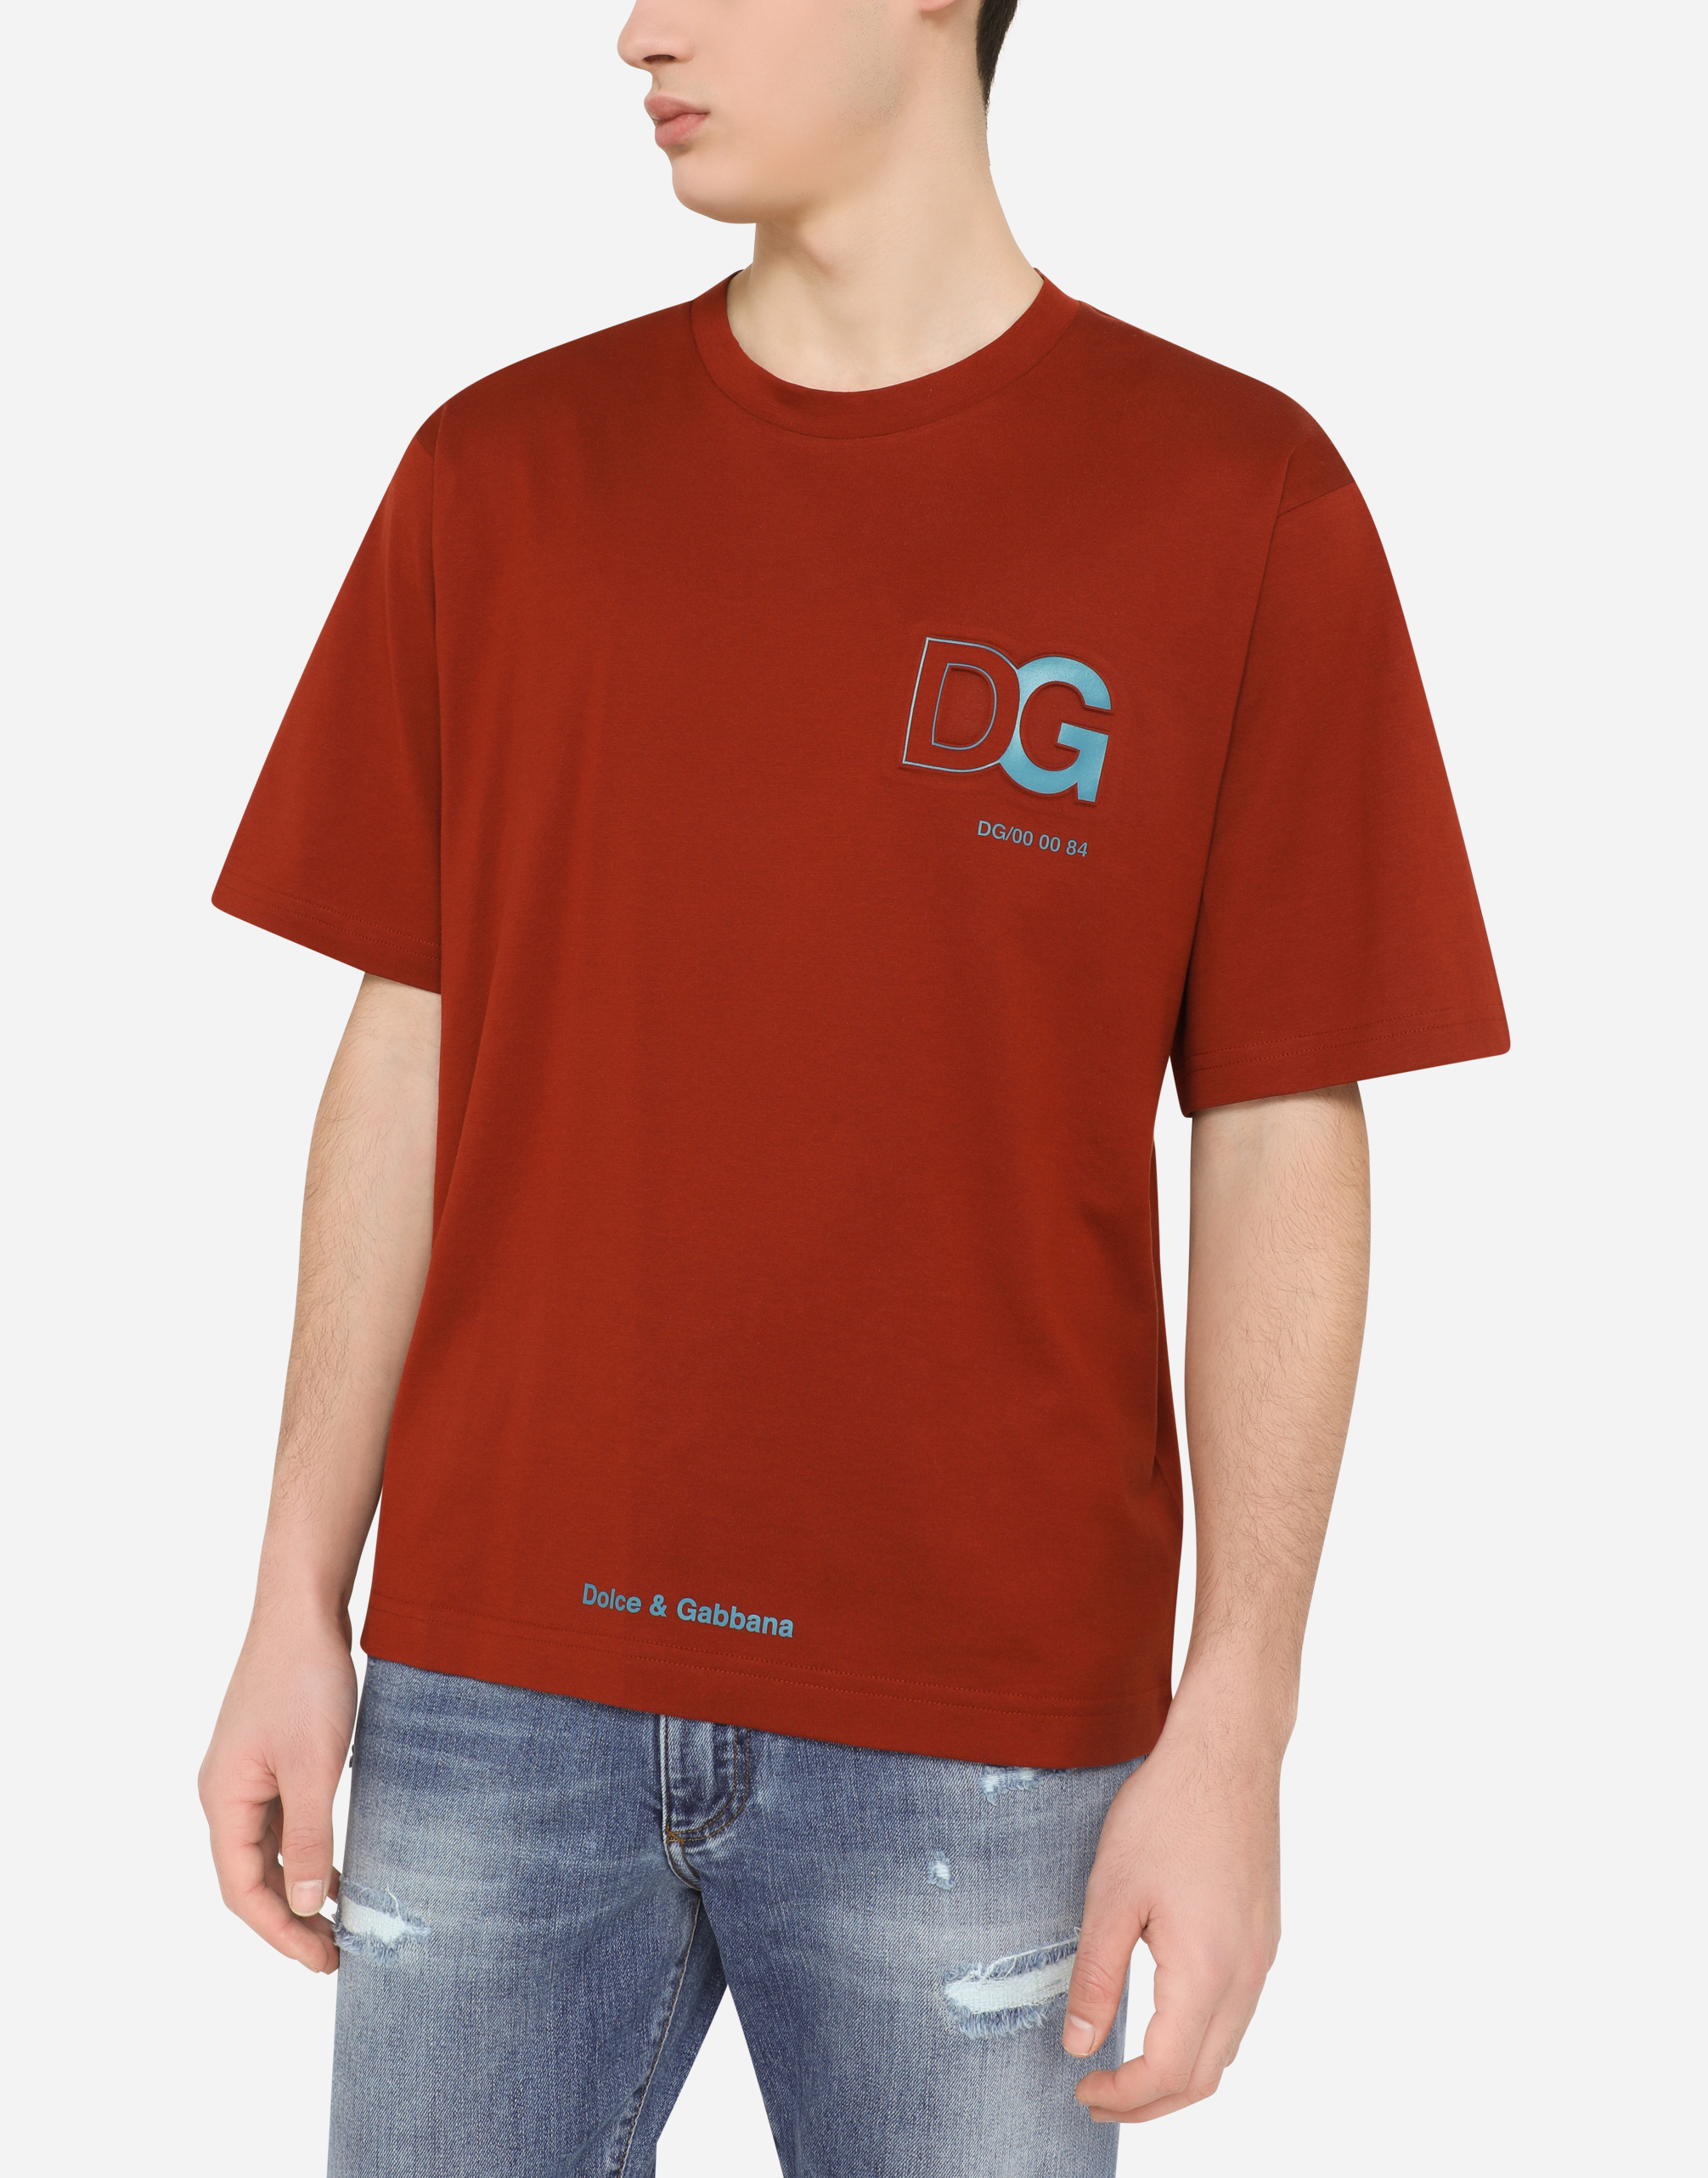 Dolce & Gabbana Baumwolle Baumwoll-T-Shirt mit dreidimensionalem DG-Logo für Herren Herren Bekleidung T-Shirts Kurzarm T-Shirts 